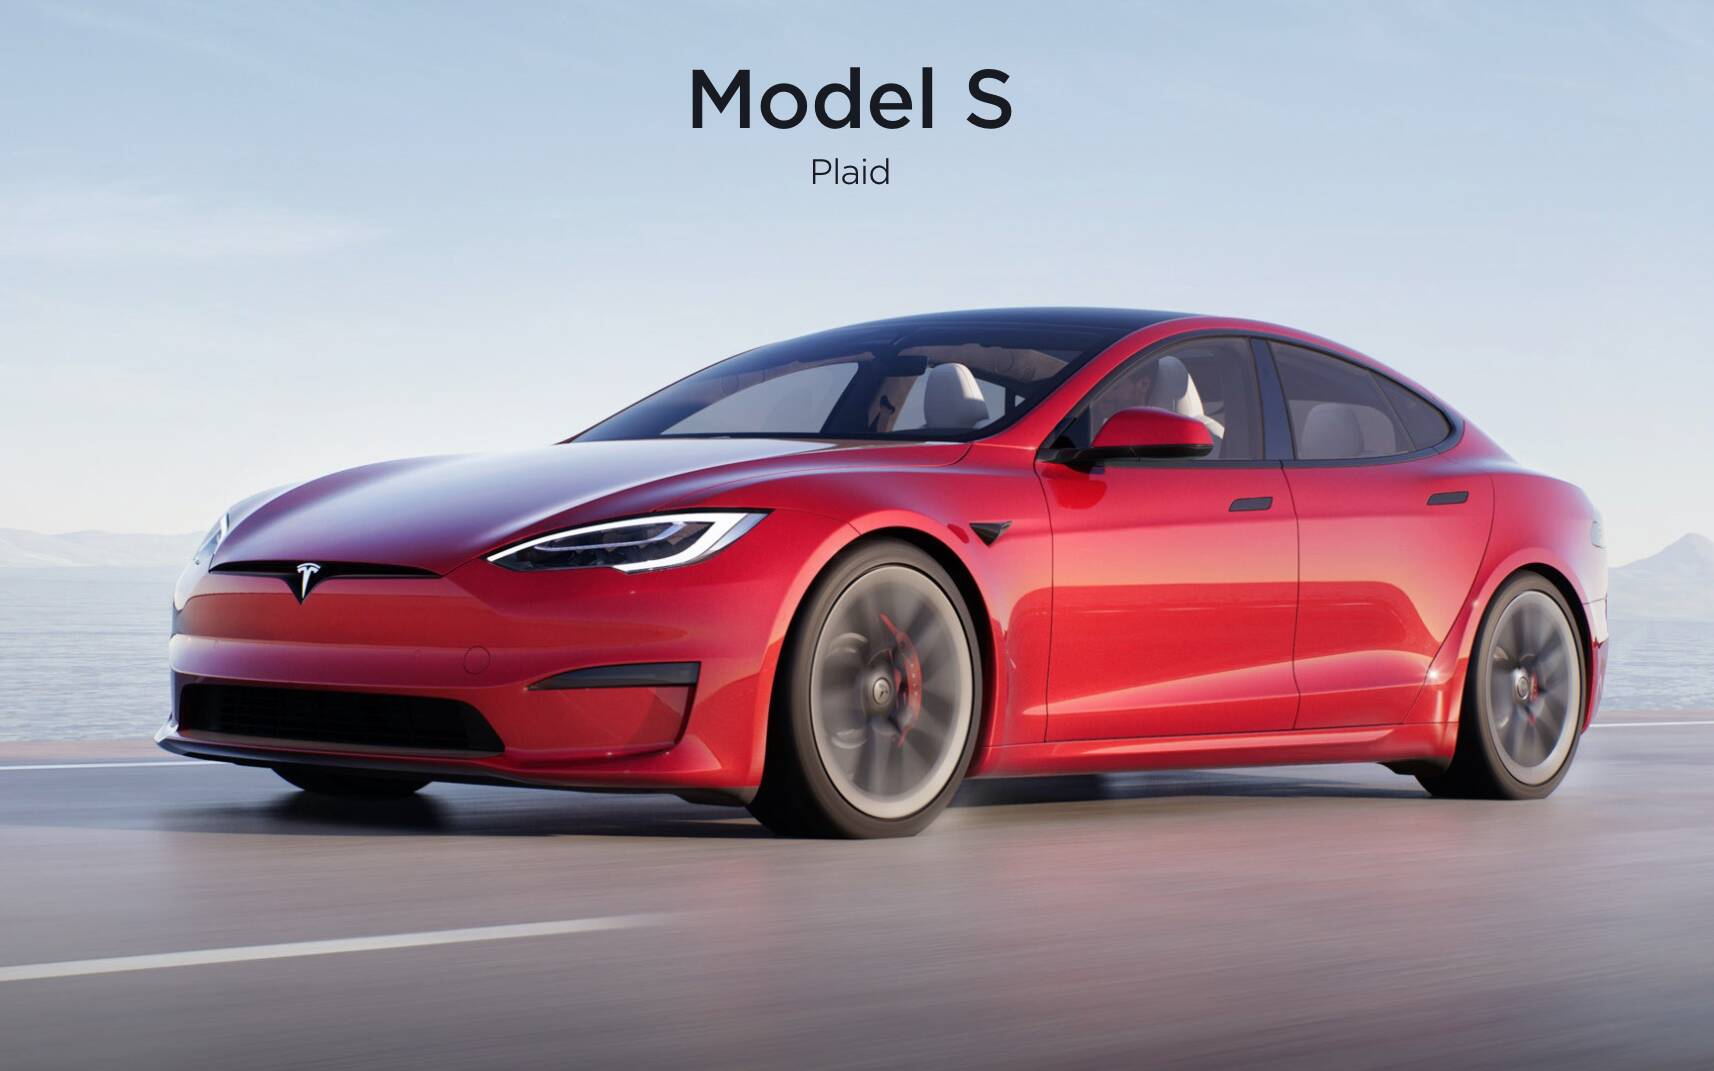 Les Tesla Model S et Model X sont désormais plus abordables grâce